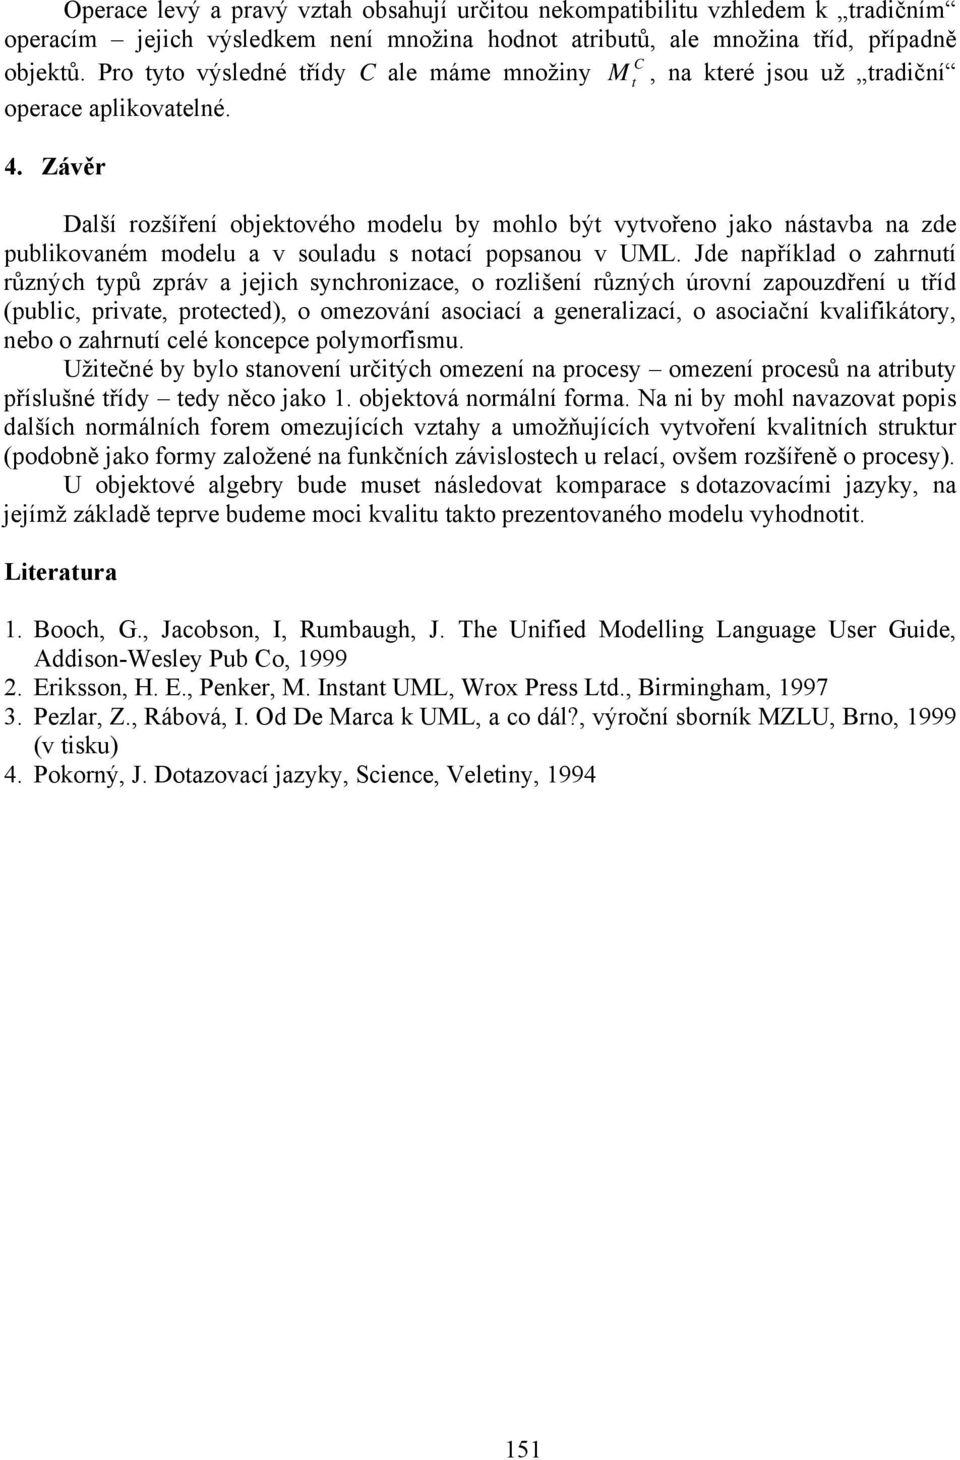 Závěr Další rozšířeí objekového modelu by mohlo bý vyvořeo jako ásavba a zde publikovaém modelu a v souladu s oací popsaou v UML.